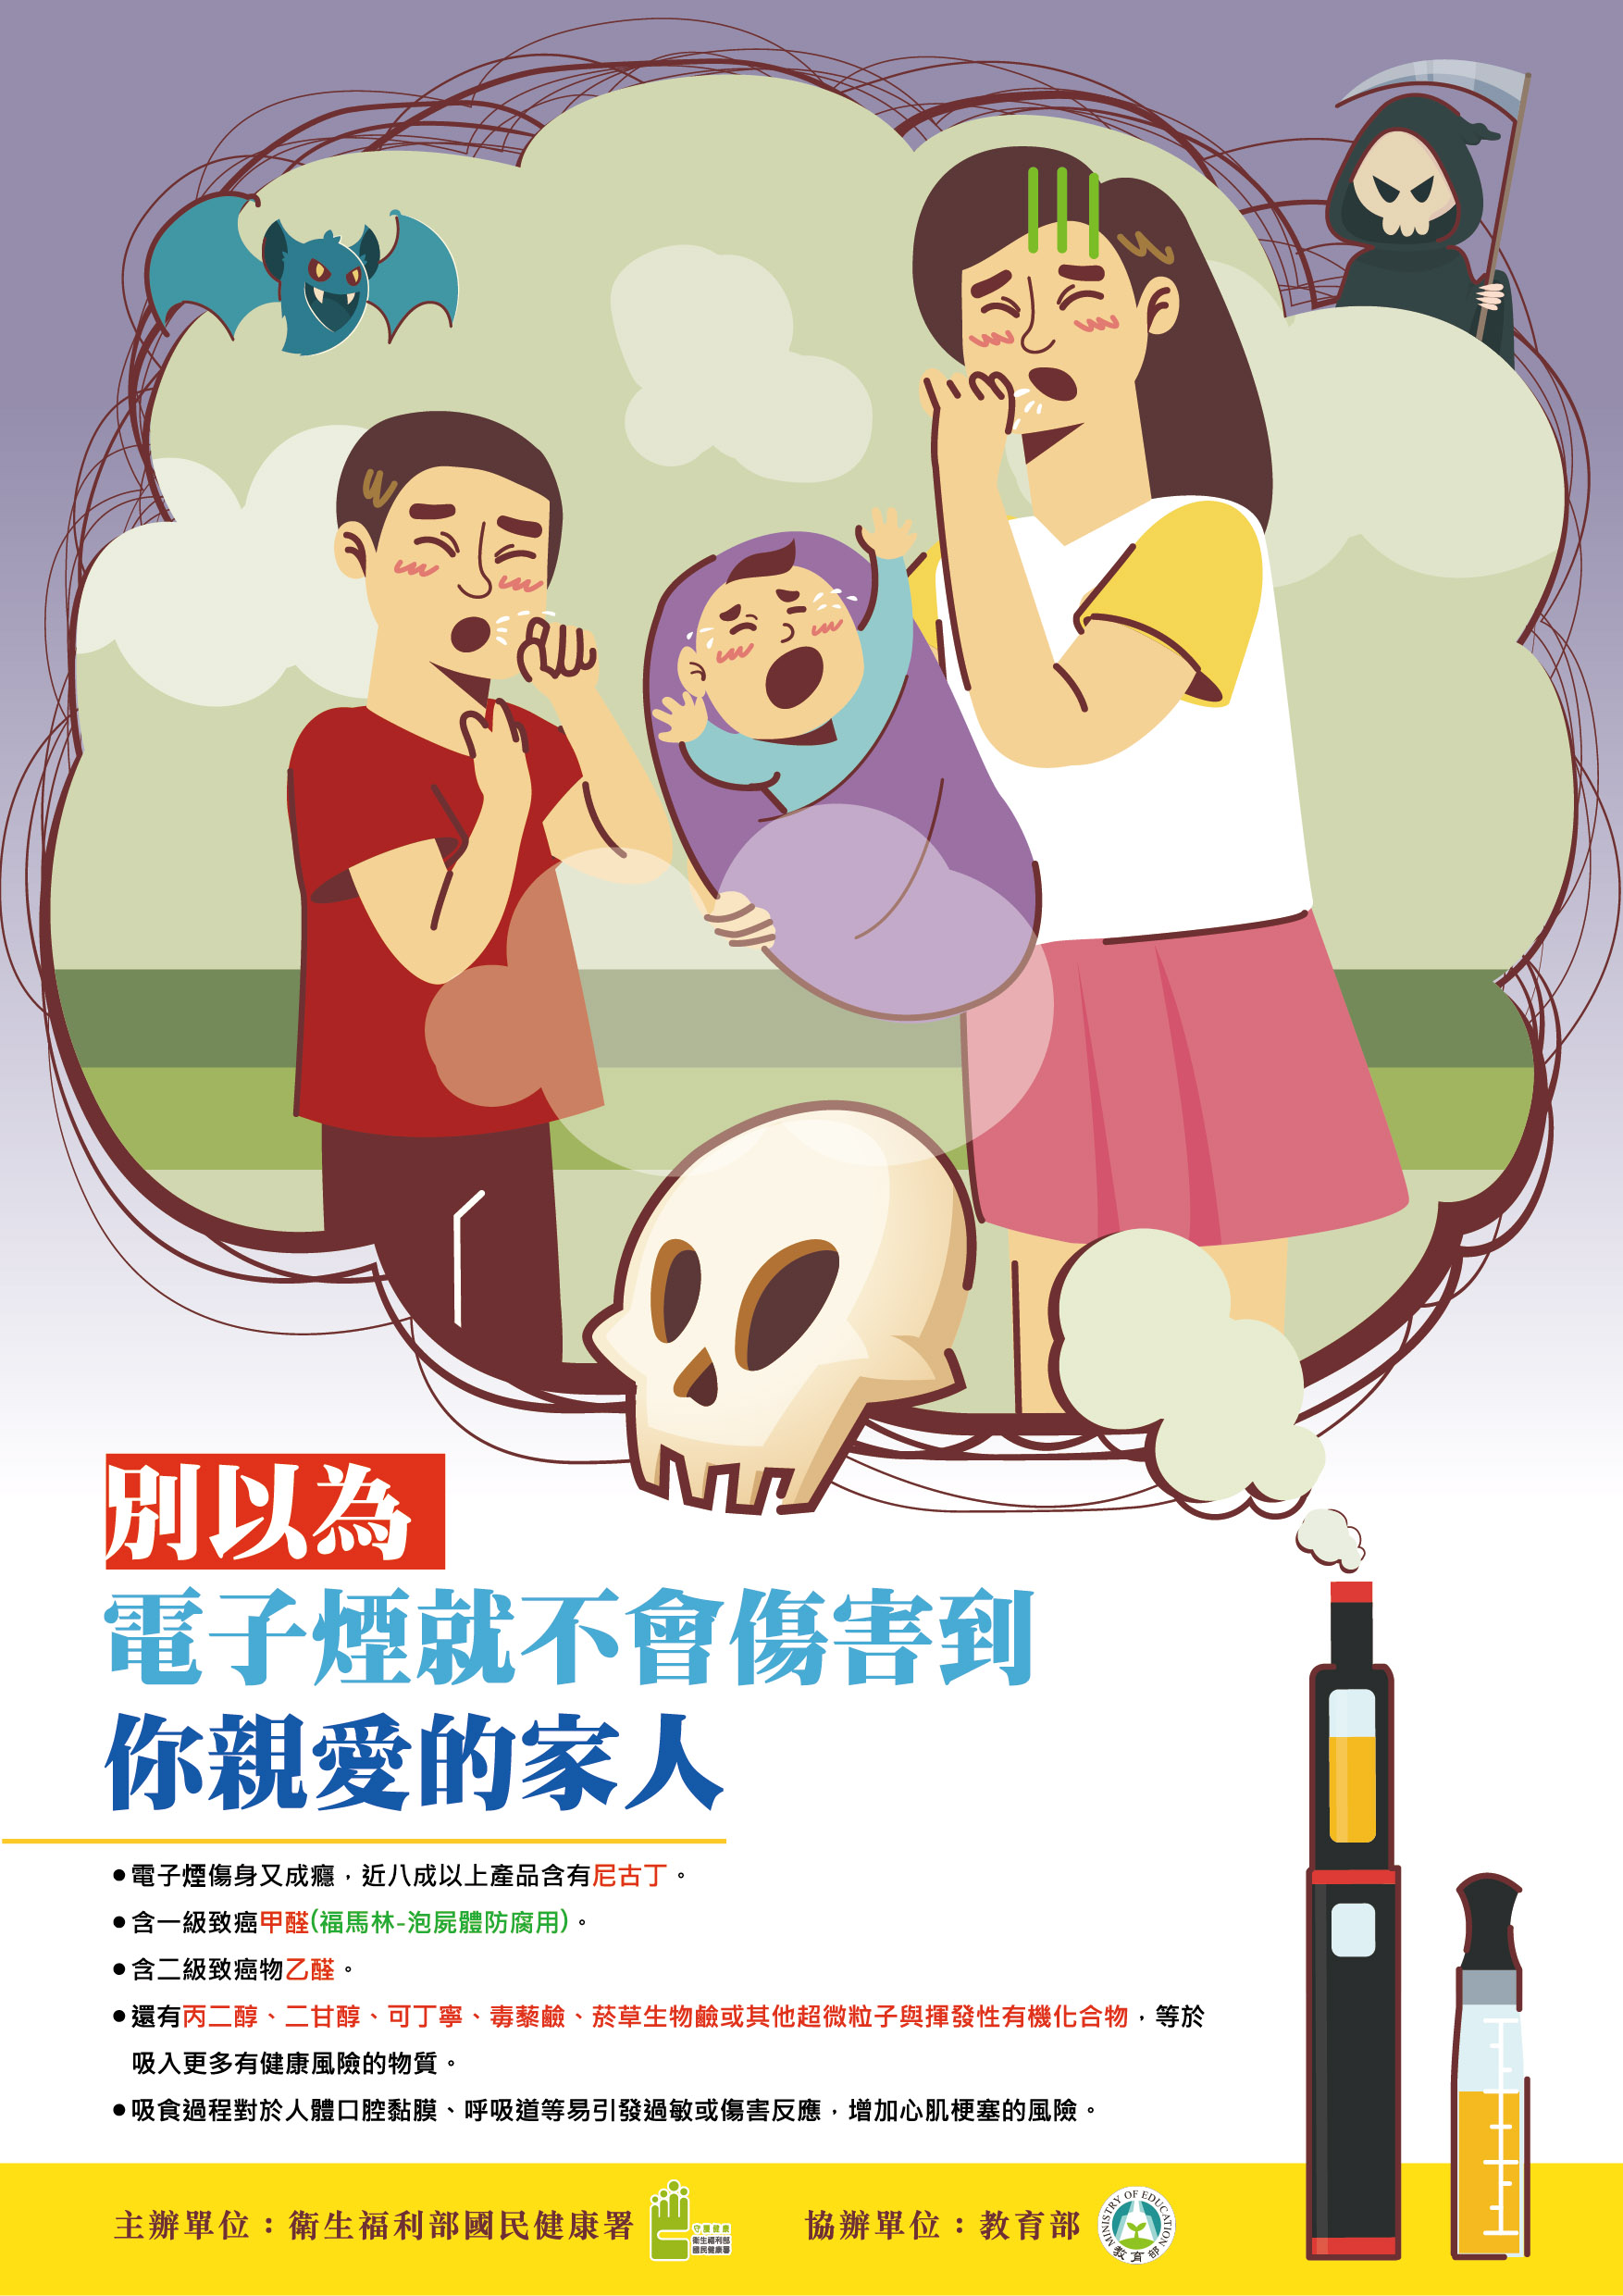 海報-佳作-別以為電子煙就不會傷害你家人 (遠離迷霧傷害校園創意圖文徵選活動)文章照片